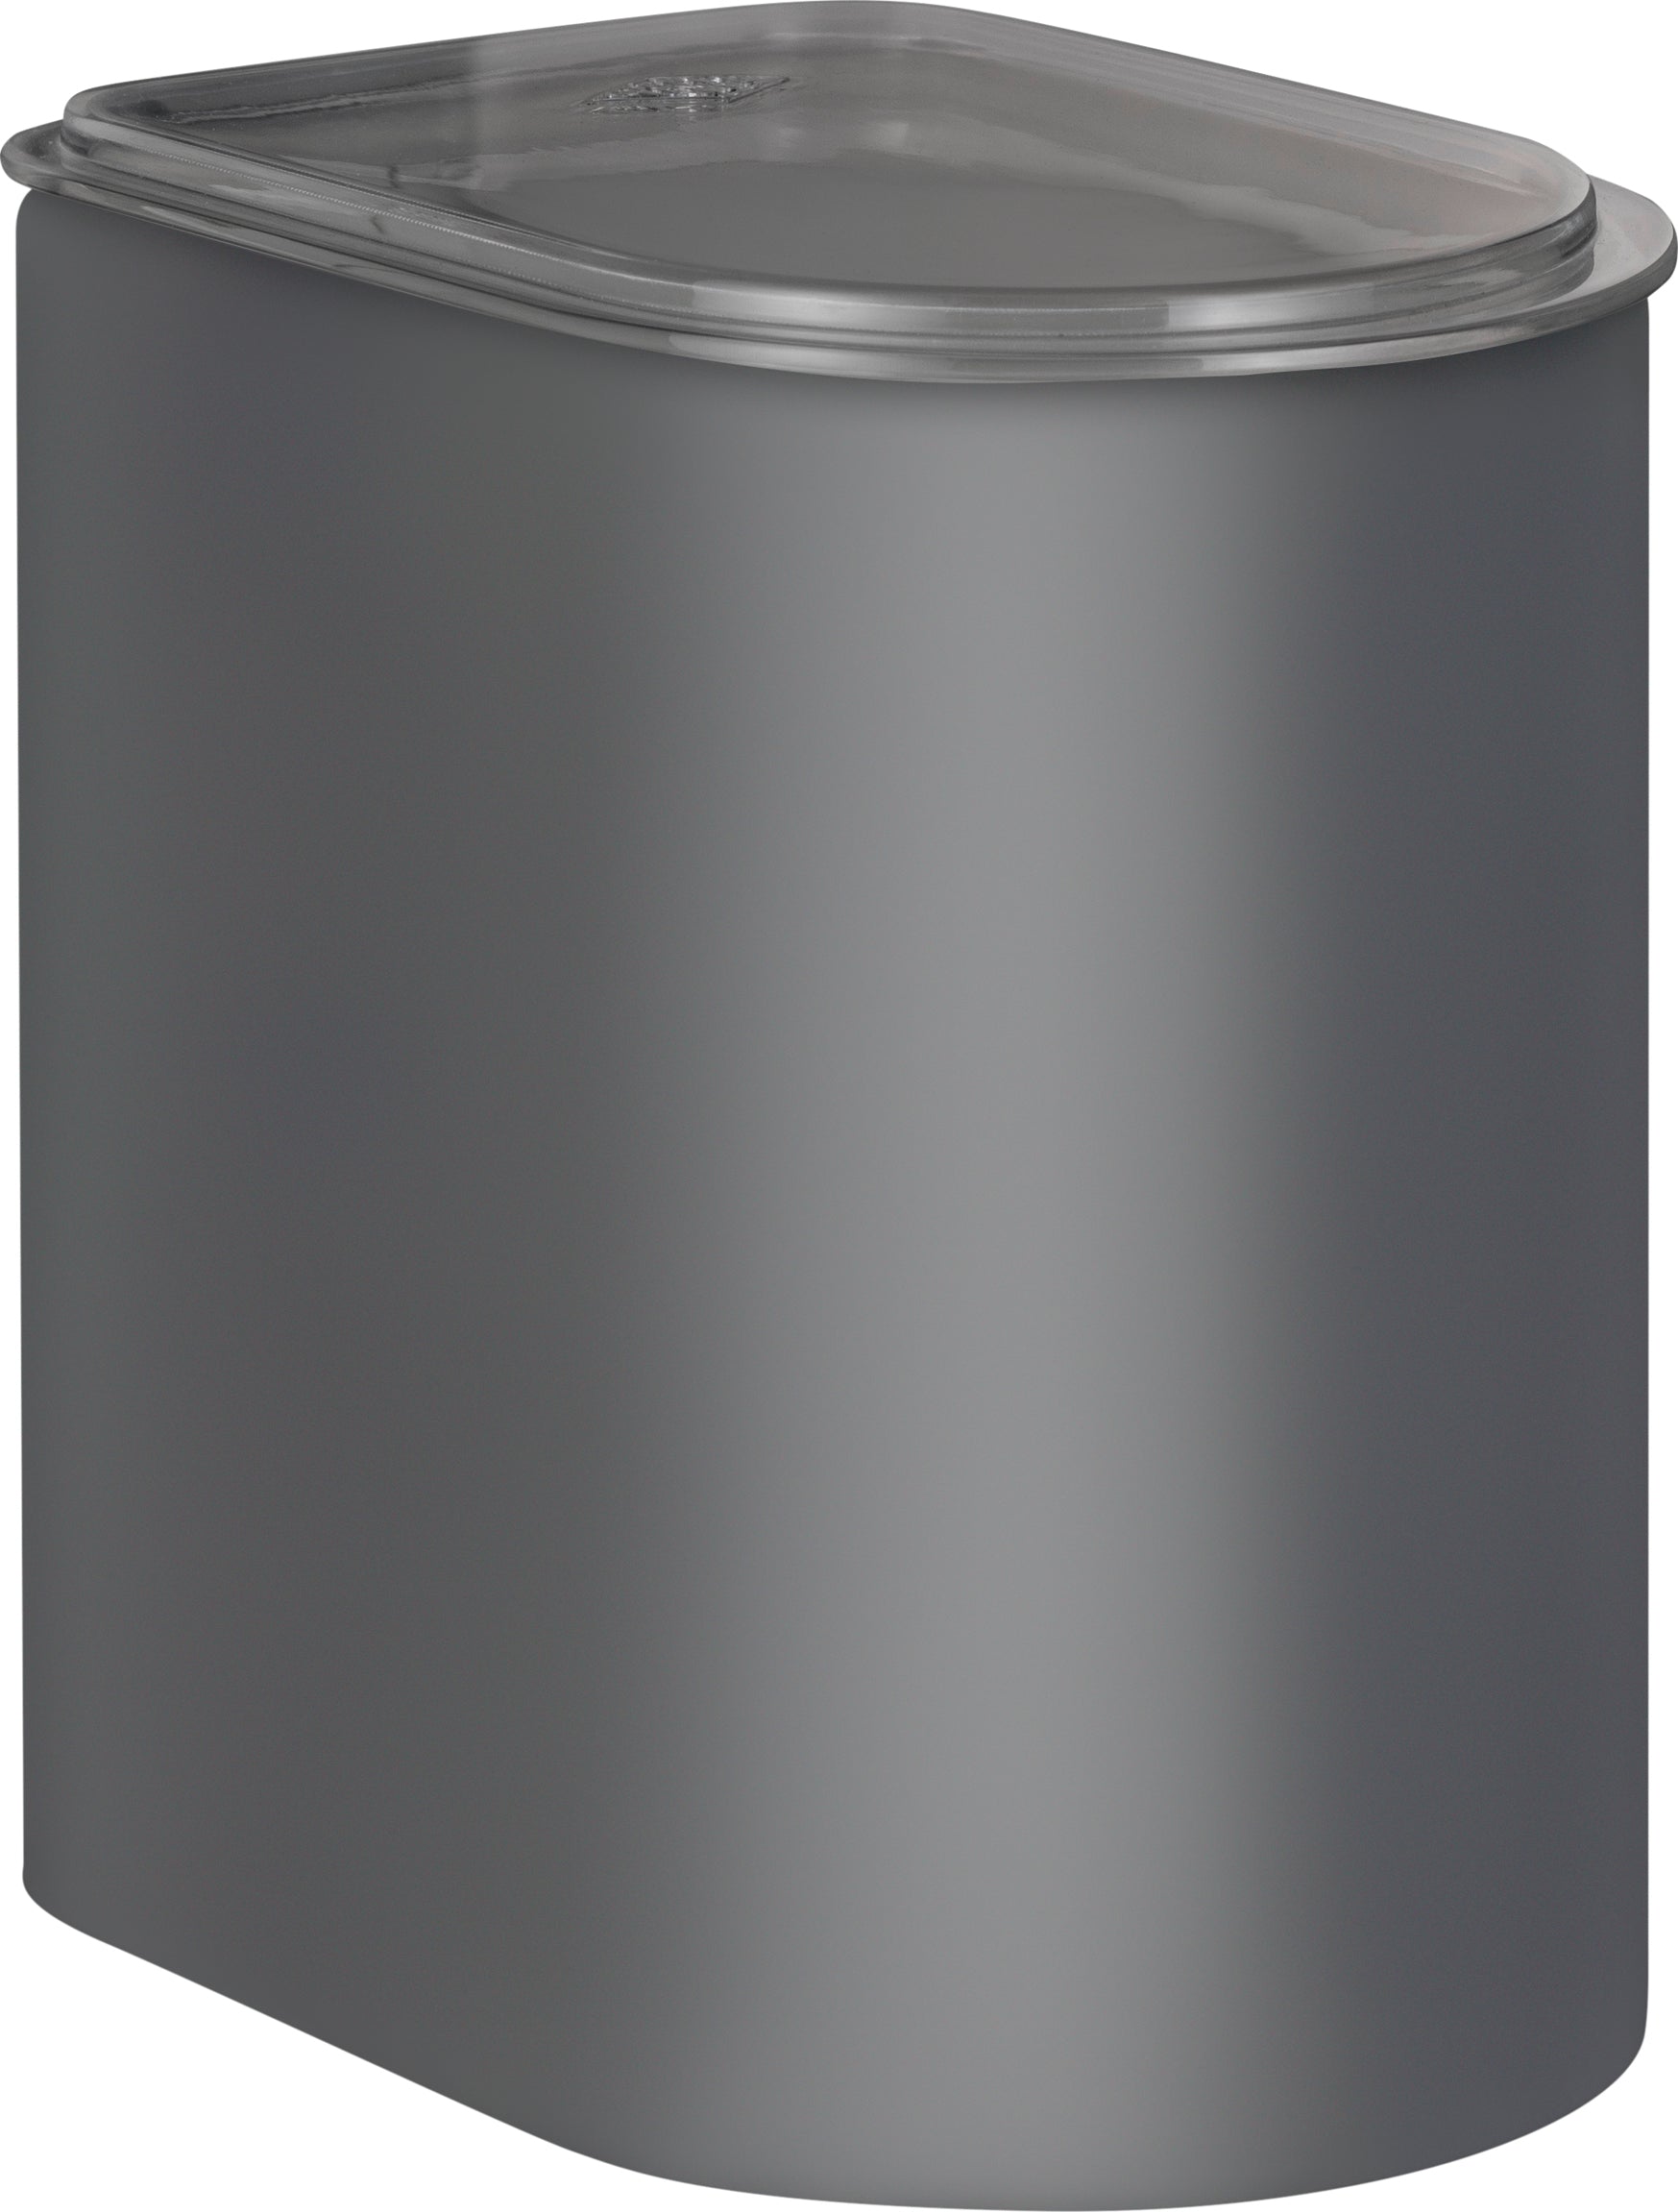 Wesco Canister 2,2 -Liter mit Acryldeckel, Graphit Matt